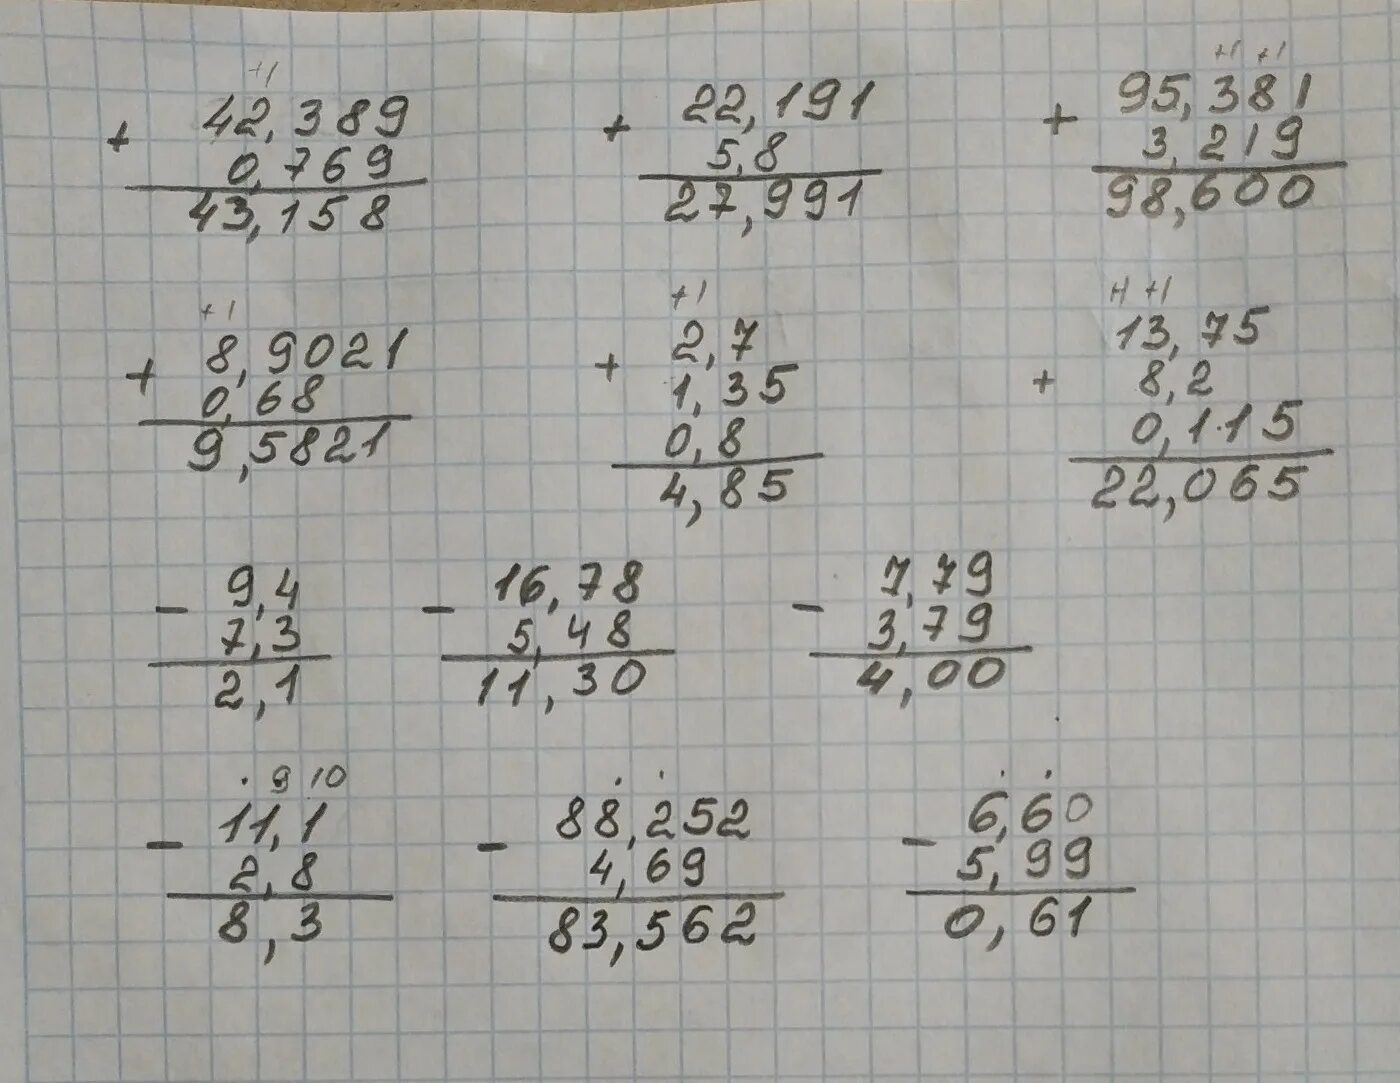 3 12 1 3 столбиком. Выполните сложение 0 769 +42.389 5.8+22.191 столбиком. Выполните сложение 0 769 +42.389 столбиком. (2,2 - 4,3):0,6 Решение столбиком. Выполните сложение 1-2/7=.